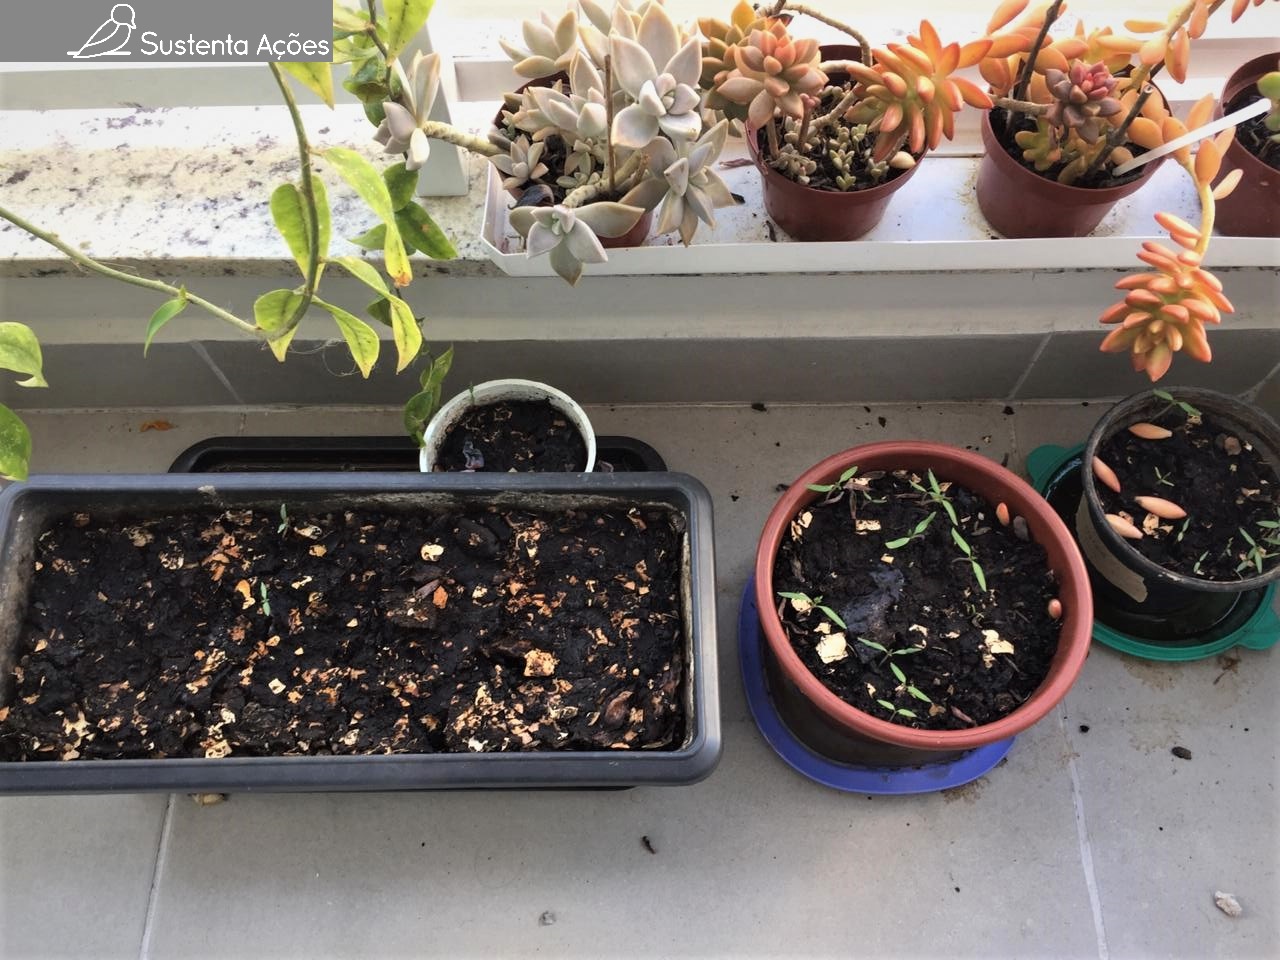 Novas plantas: bucha vegetal, hortelã, erva-cidreira, salsa lisa e uma flor misteriosa